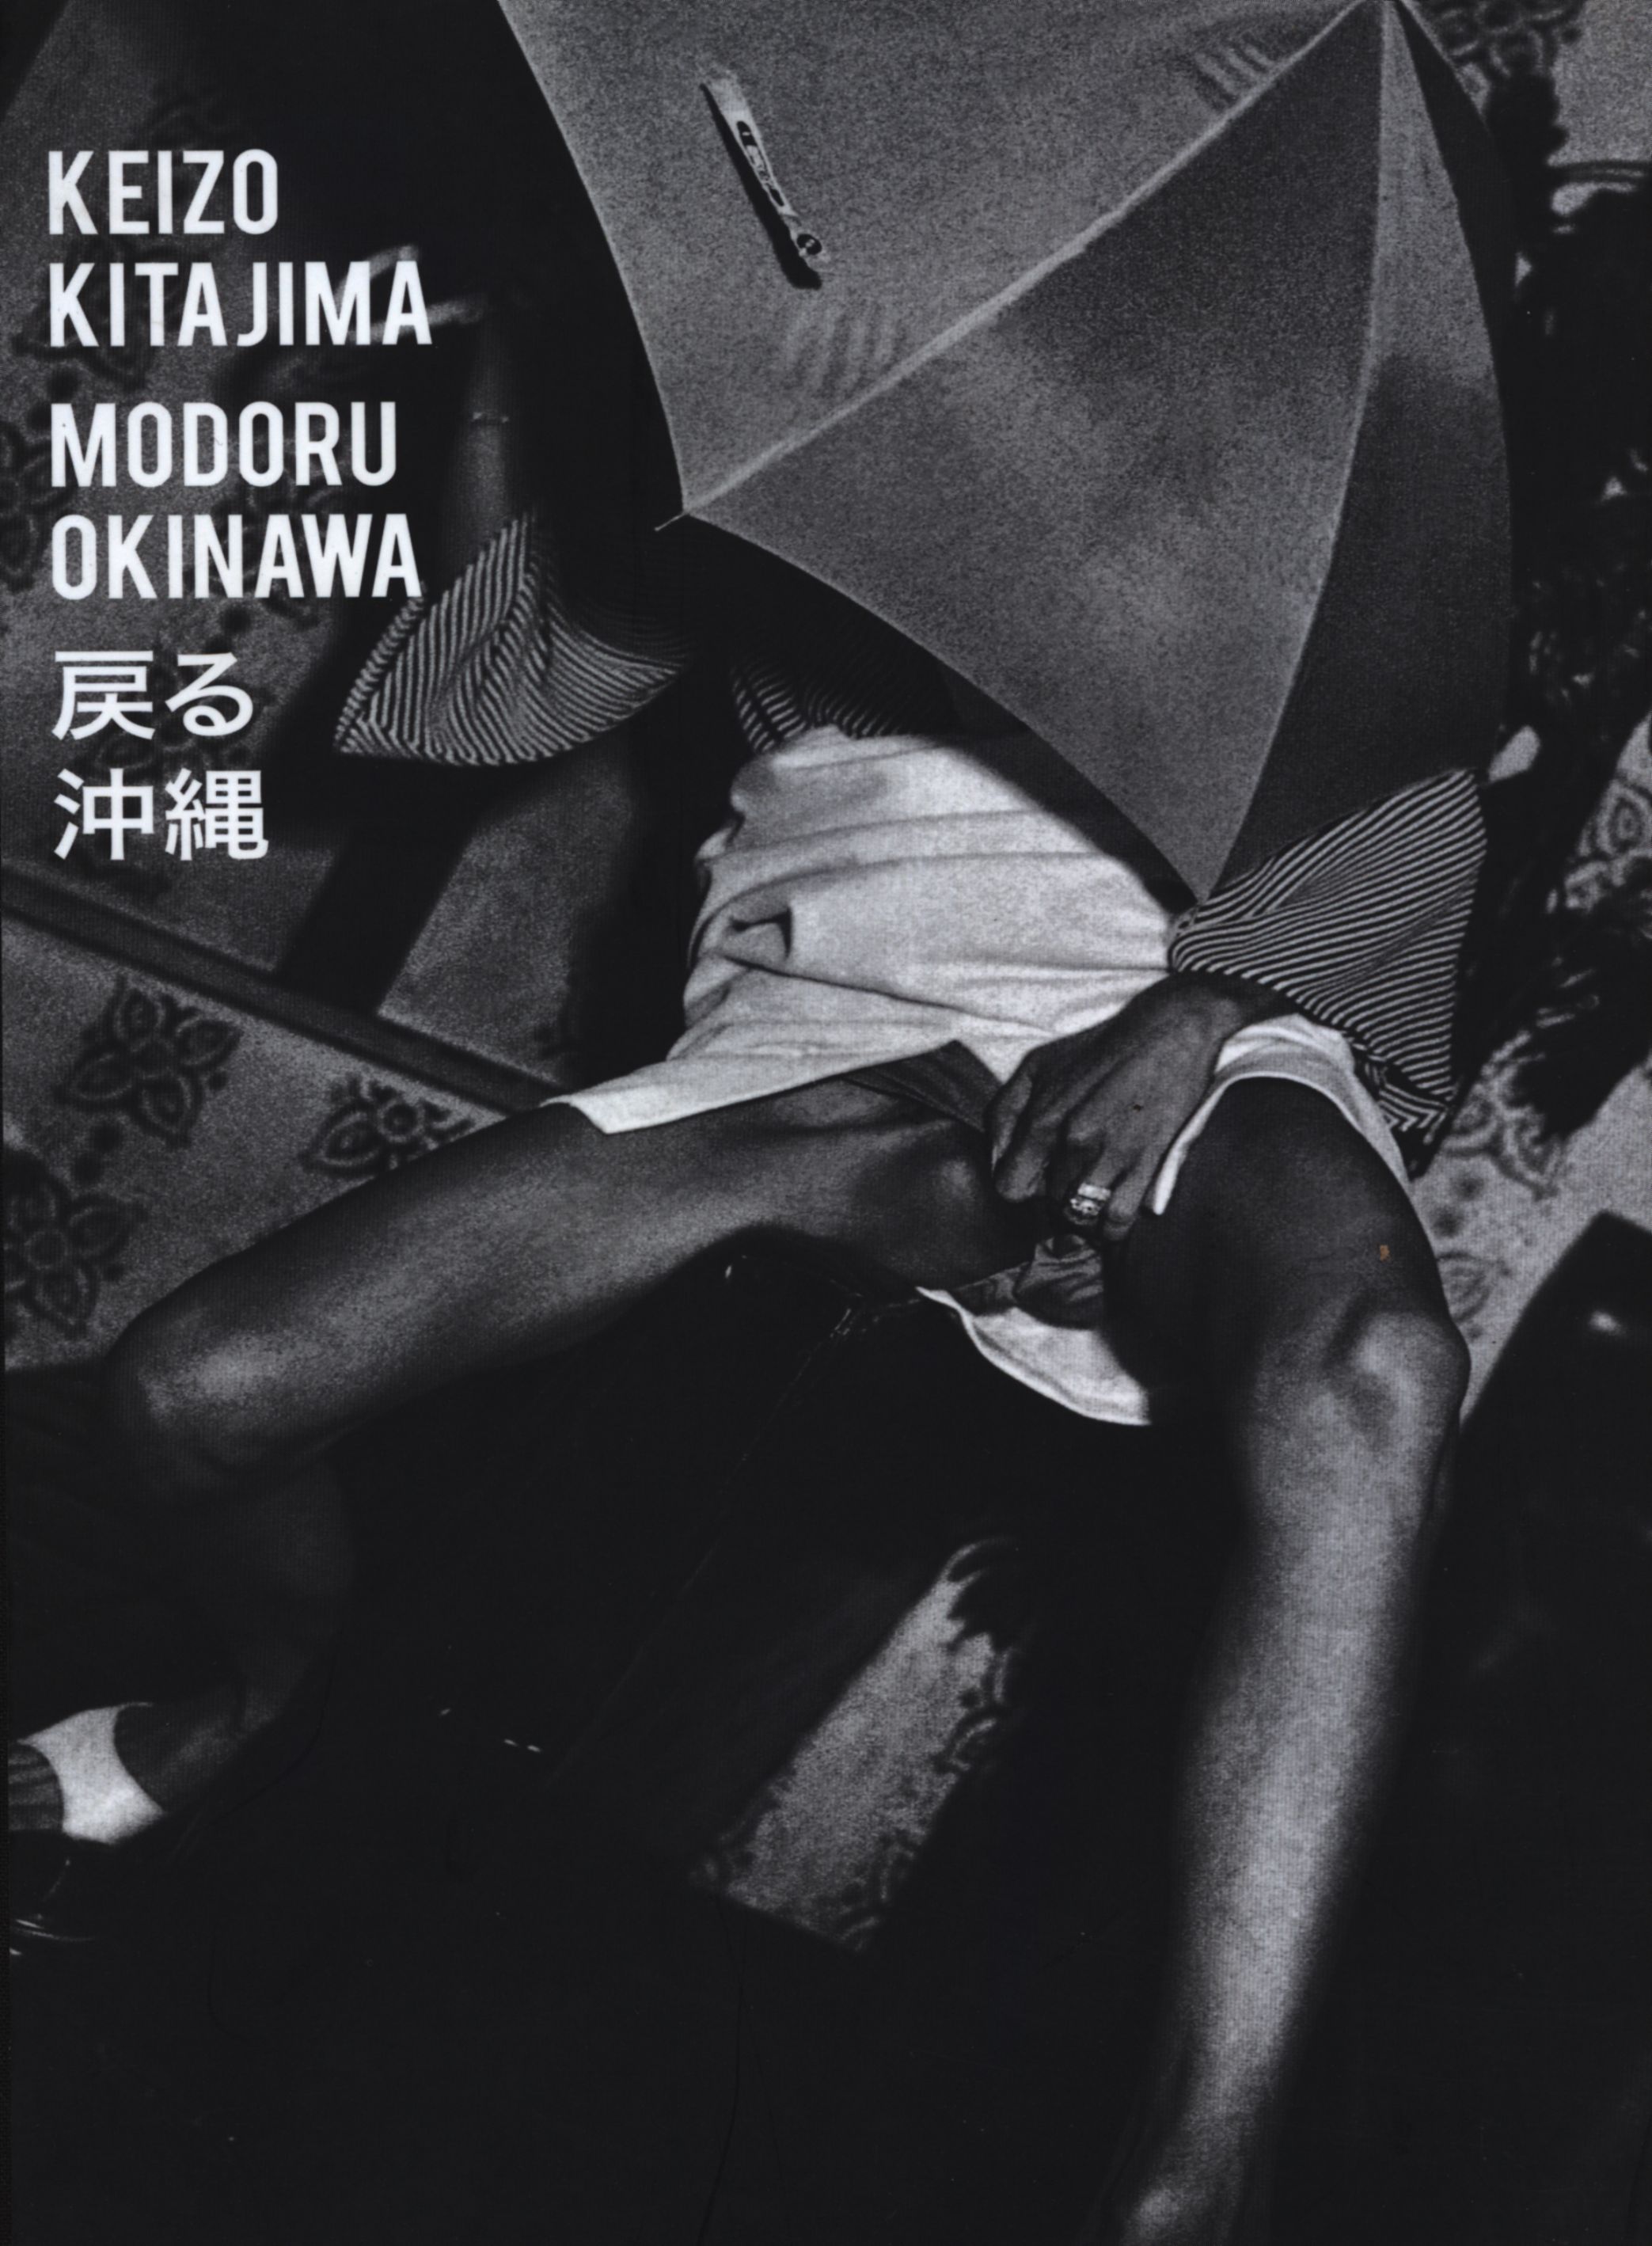 KEIZO KITSJIMA “MODORU OKINAWA” 戻る 沖縄